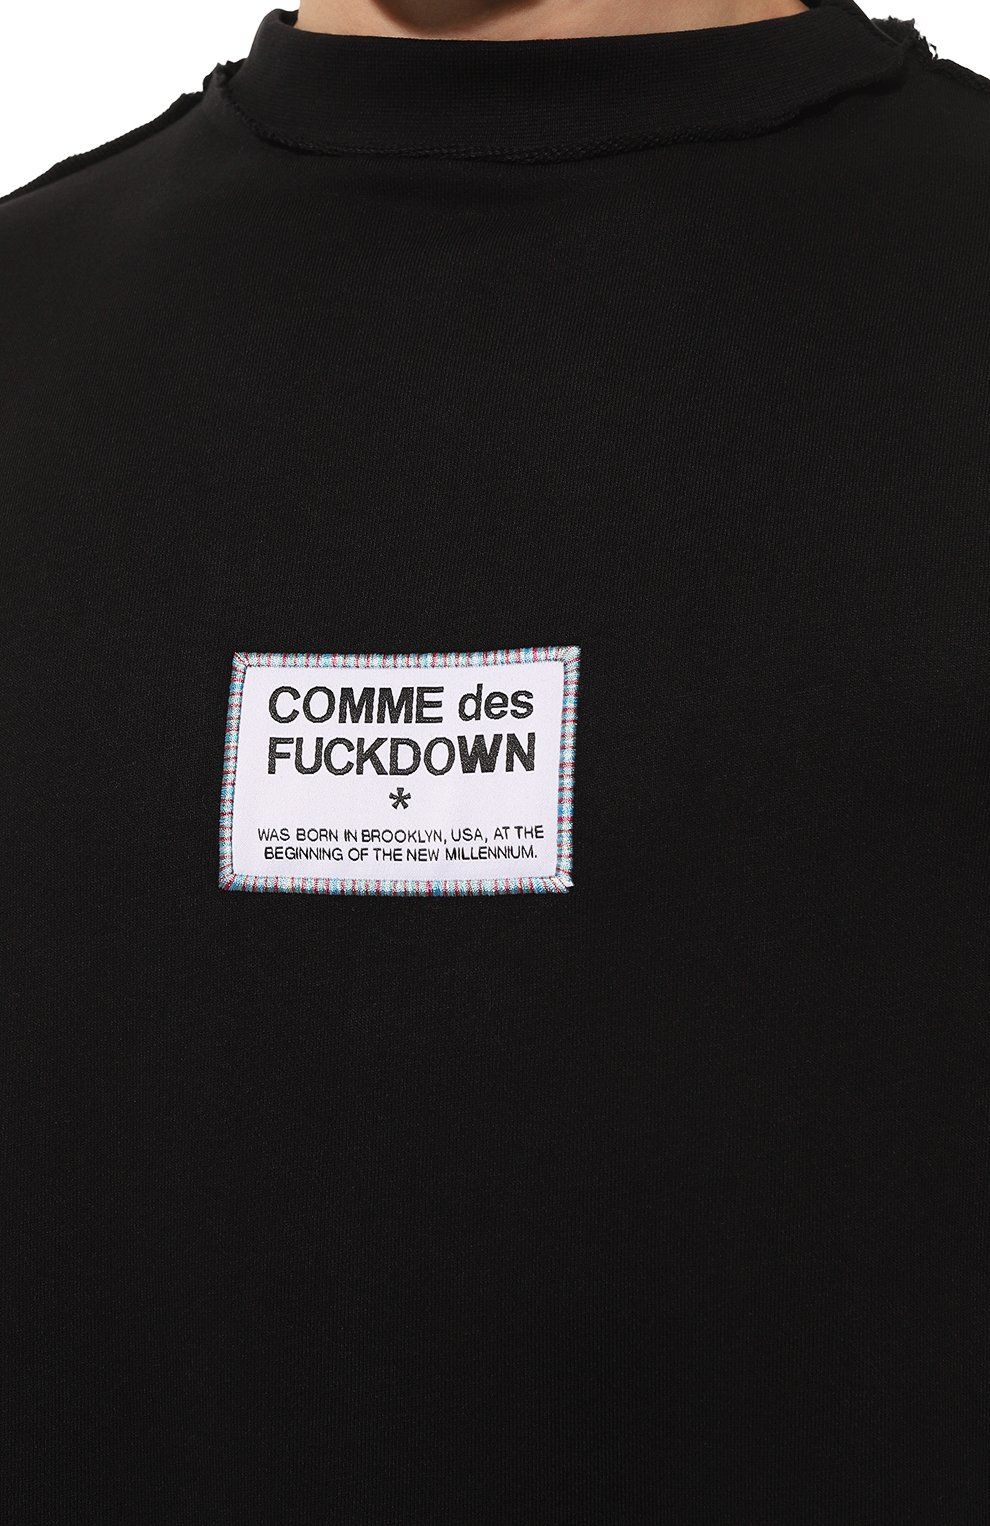 Chic Raw Cut Crewneck Sweatshirt in Black